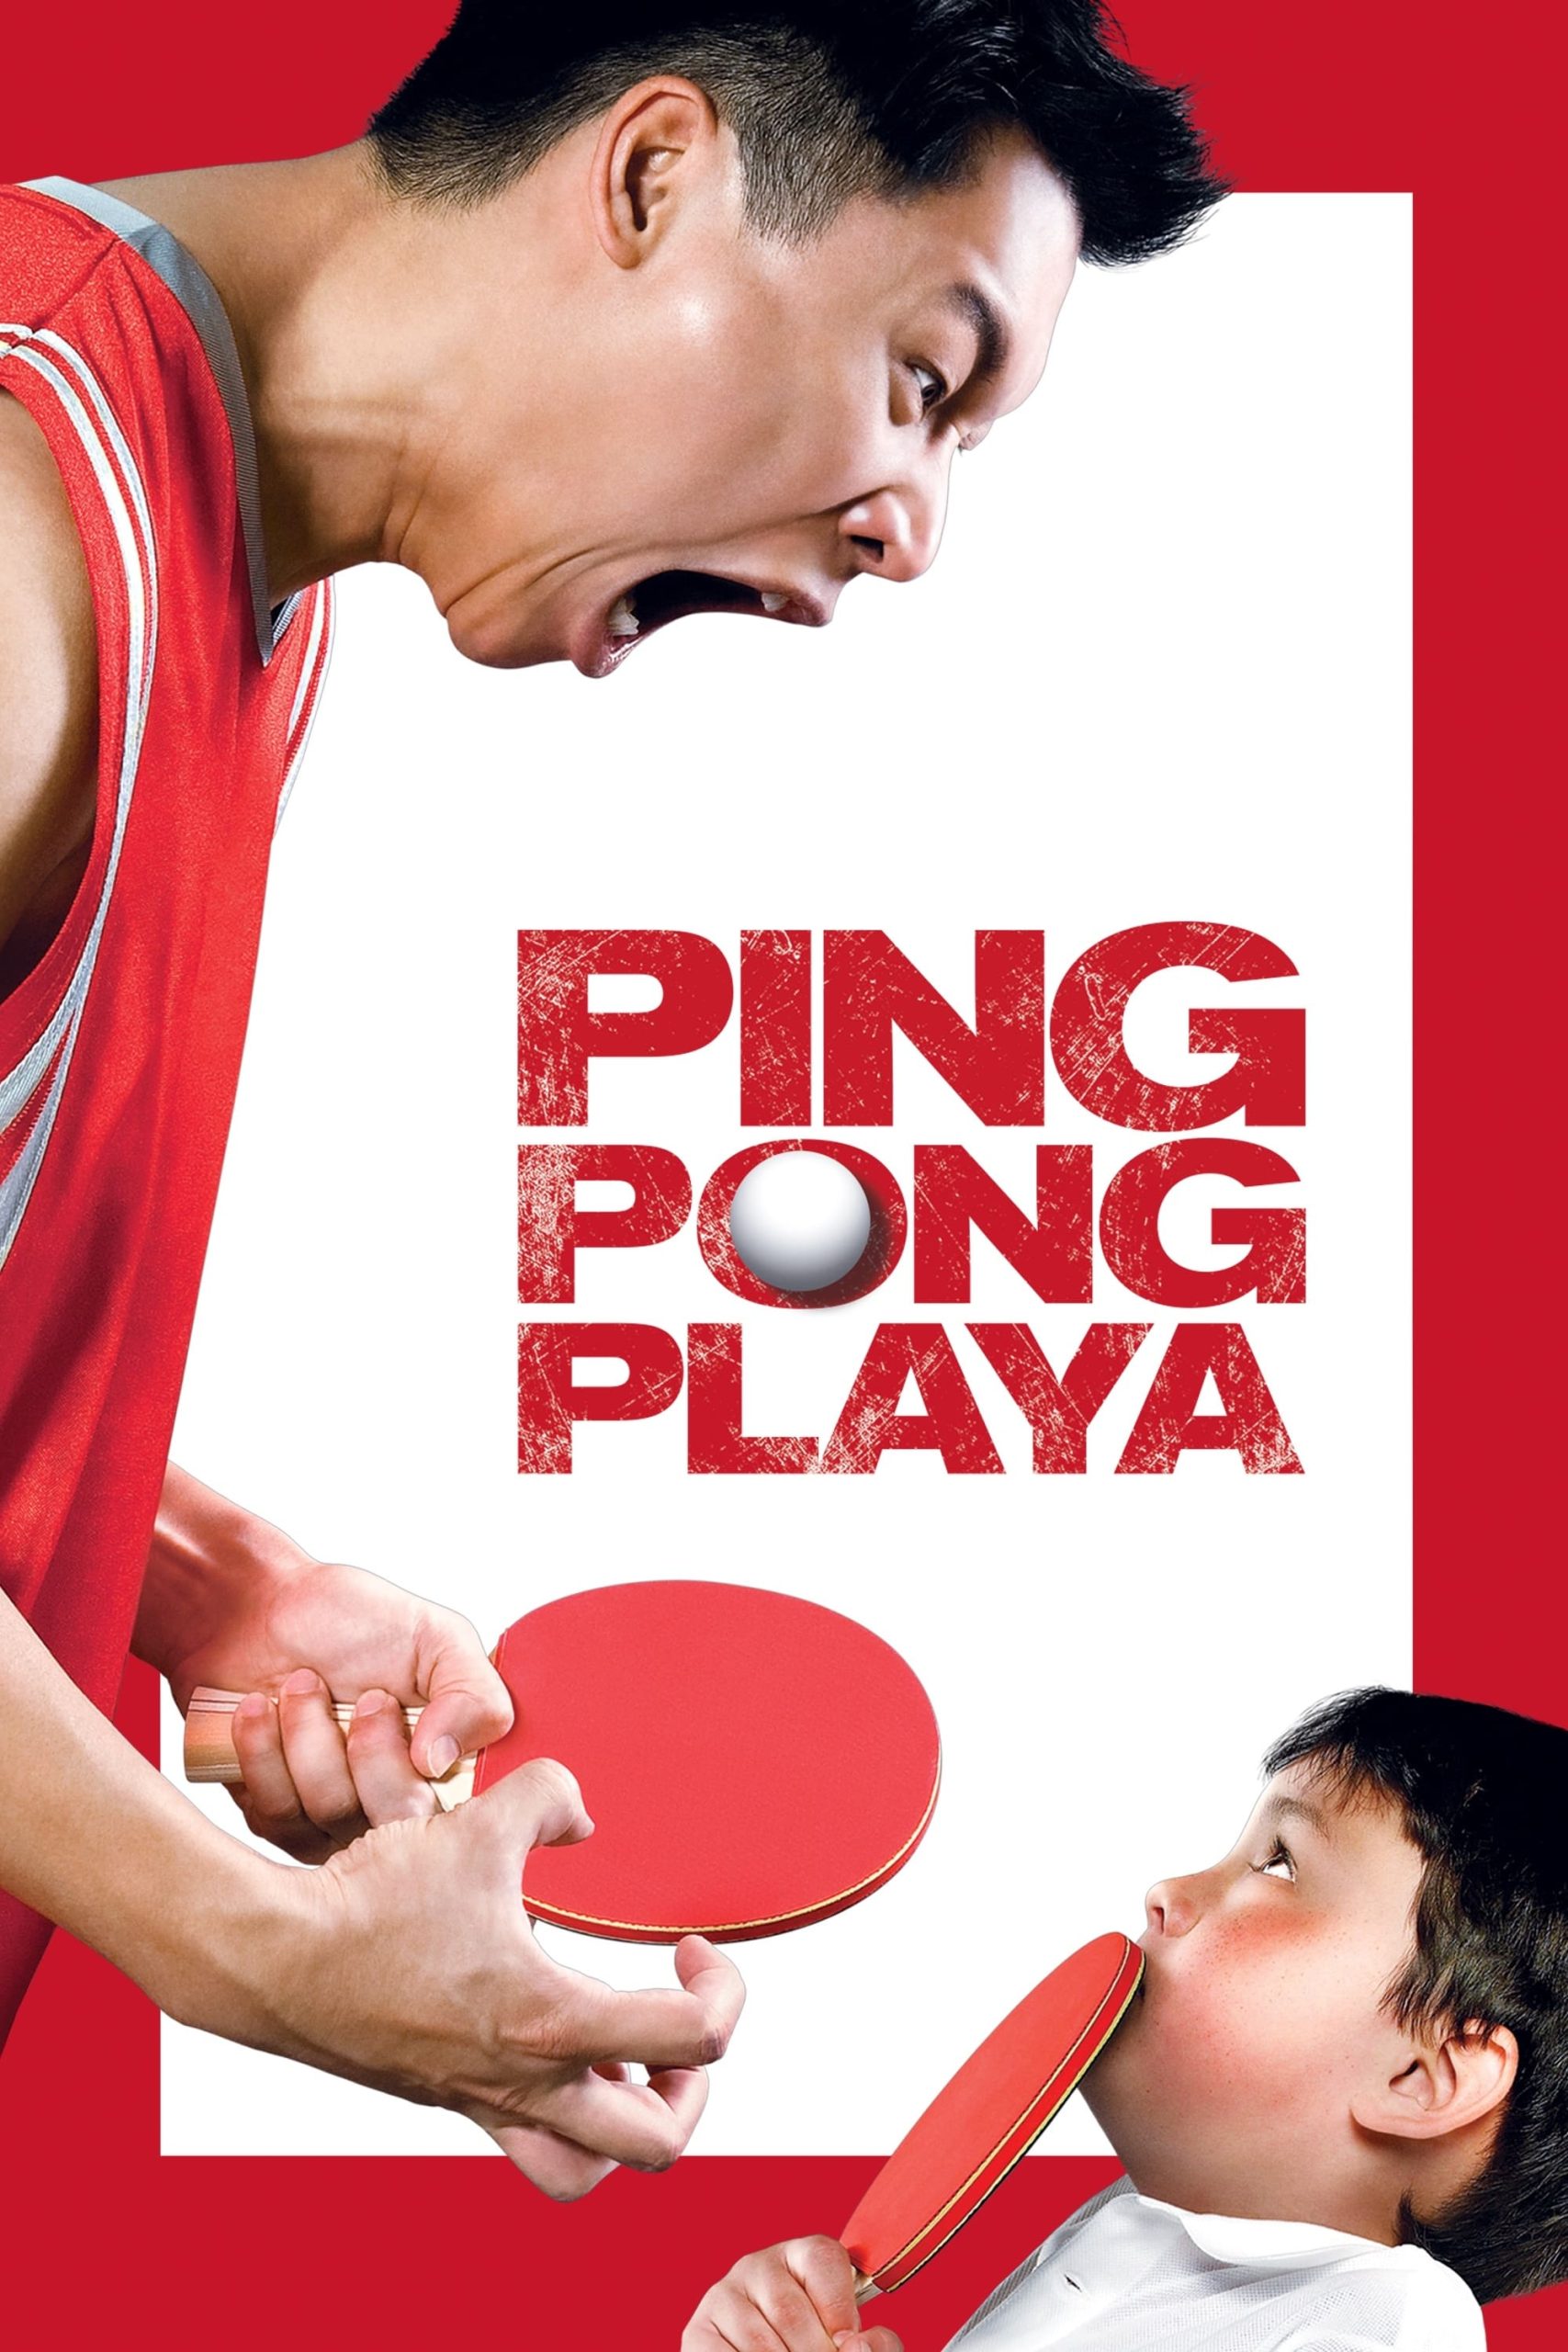 دانلود صوت دوبله فیلم Ping Pong Playa